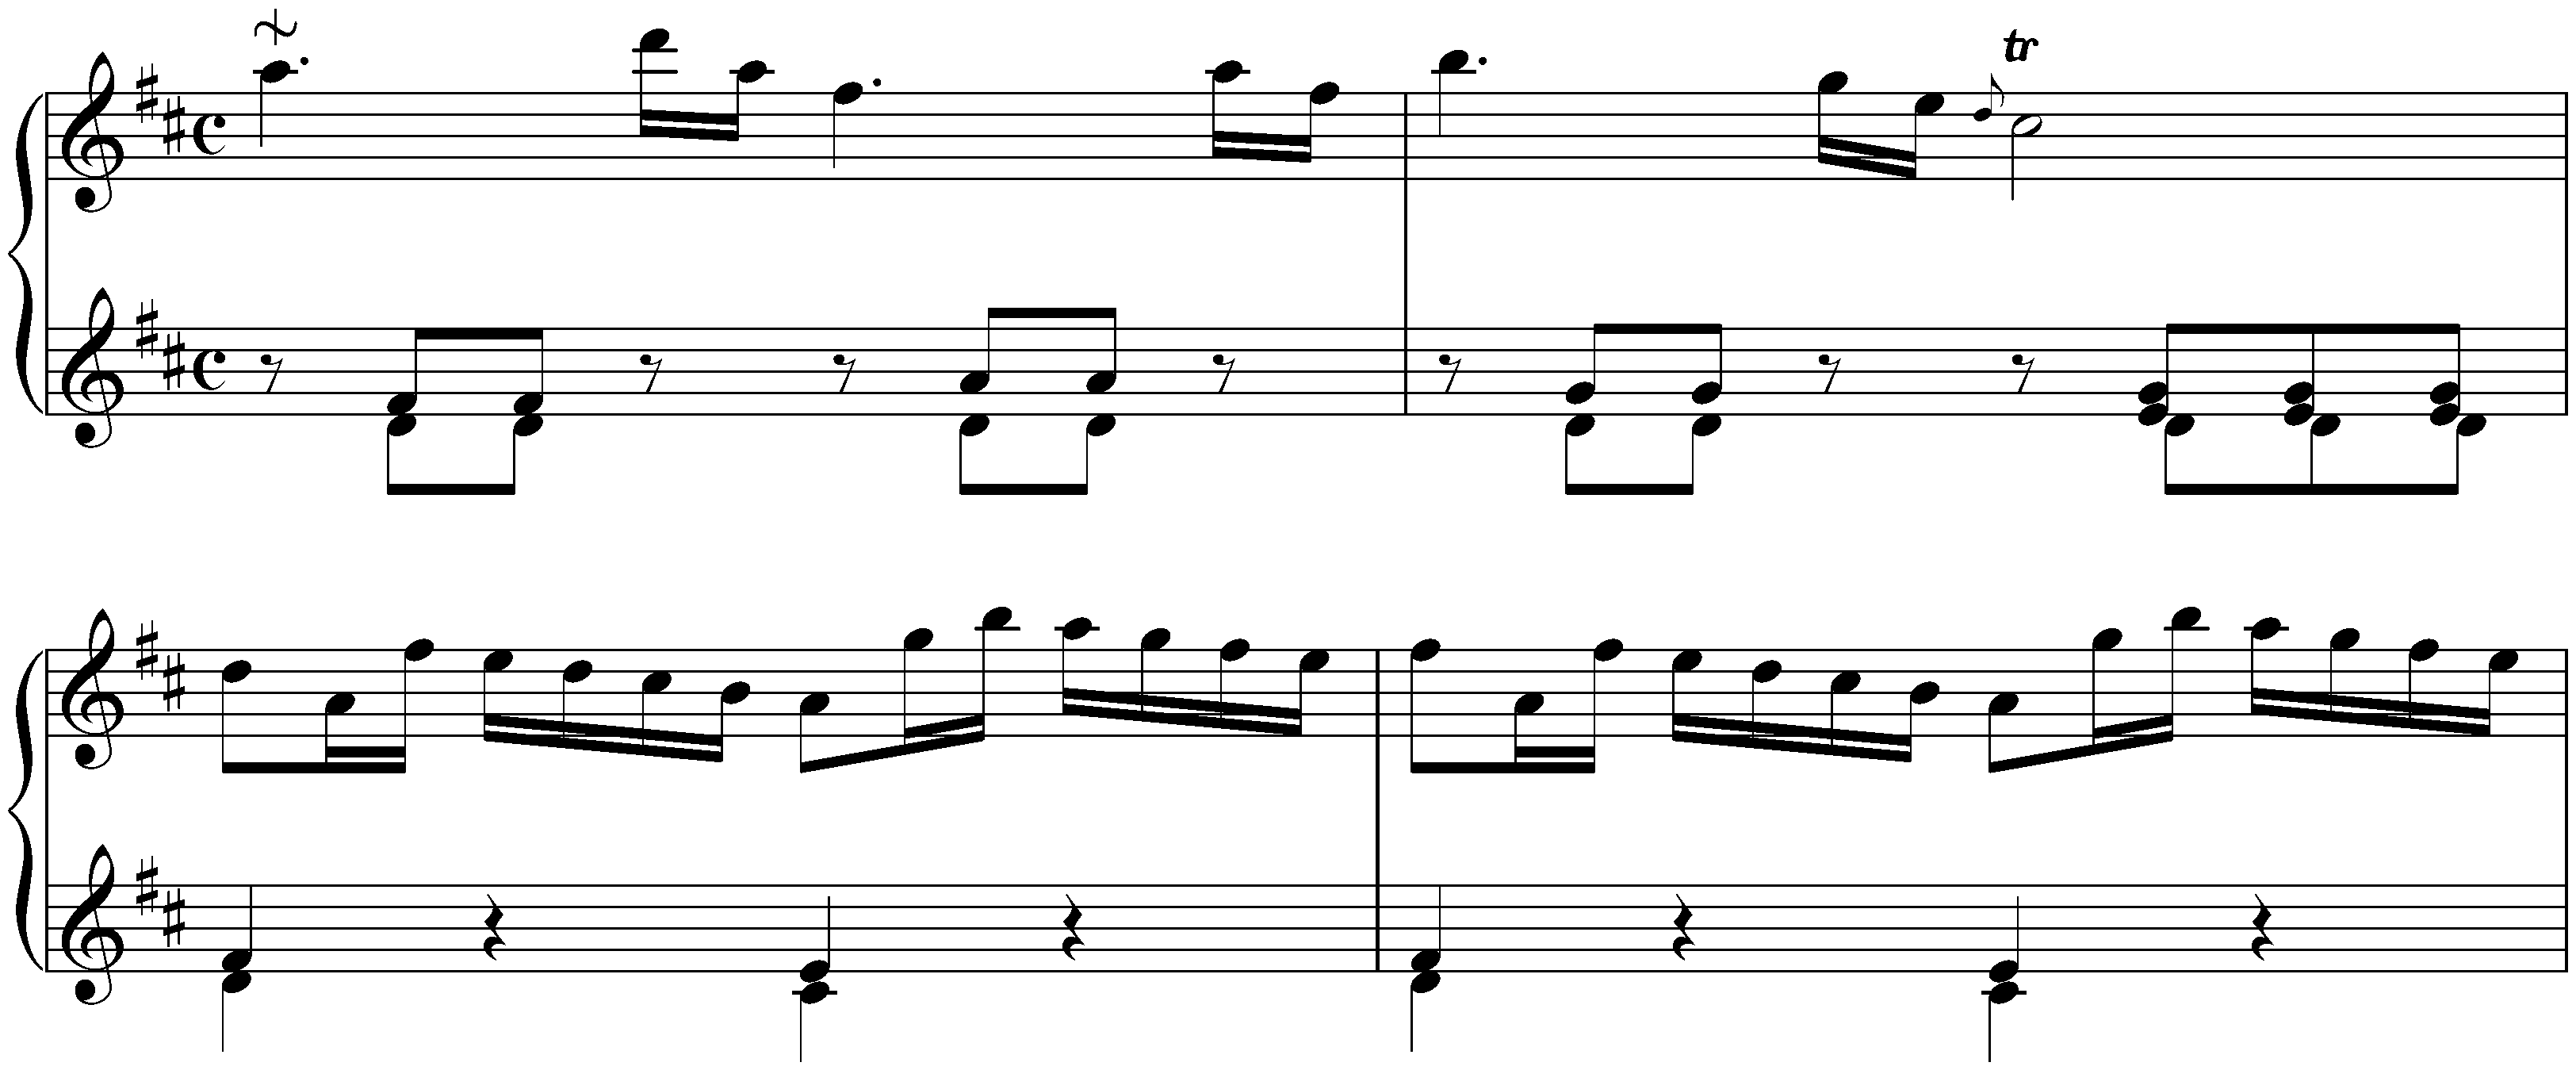 Sonata in D major, Hob. XVI:4; 1.